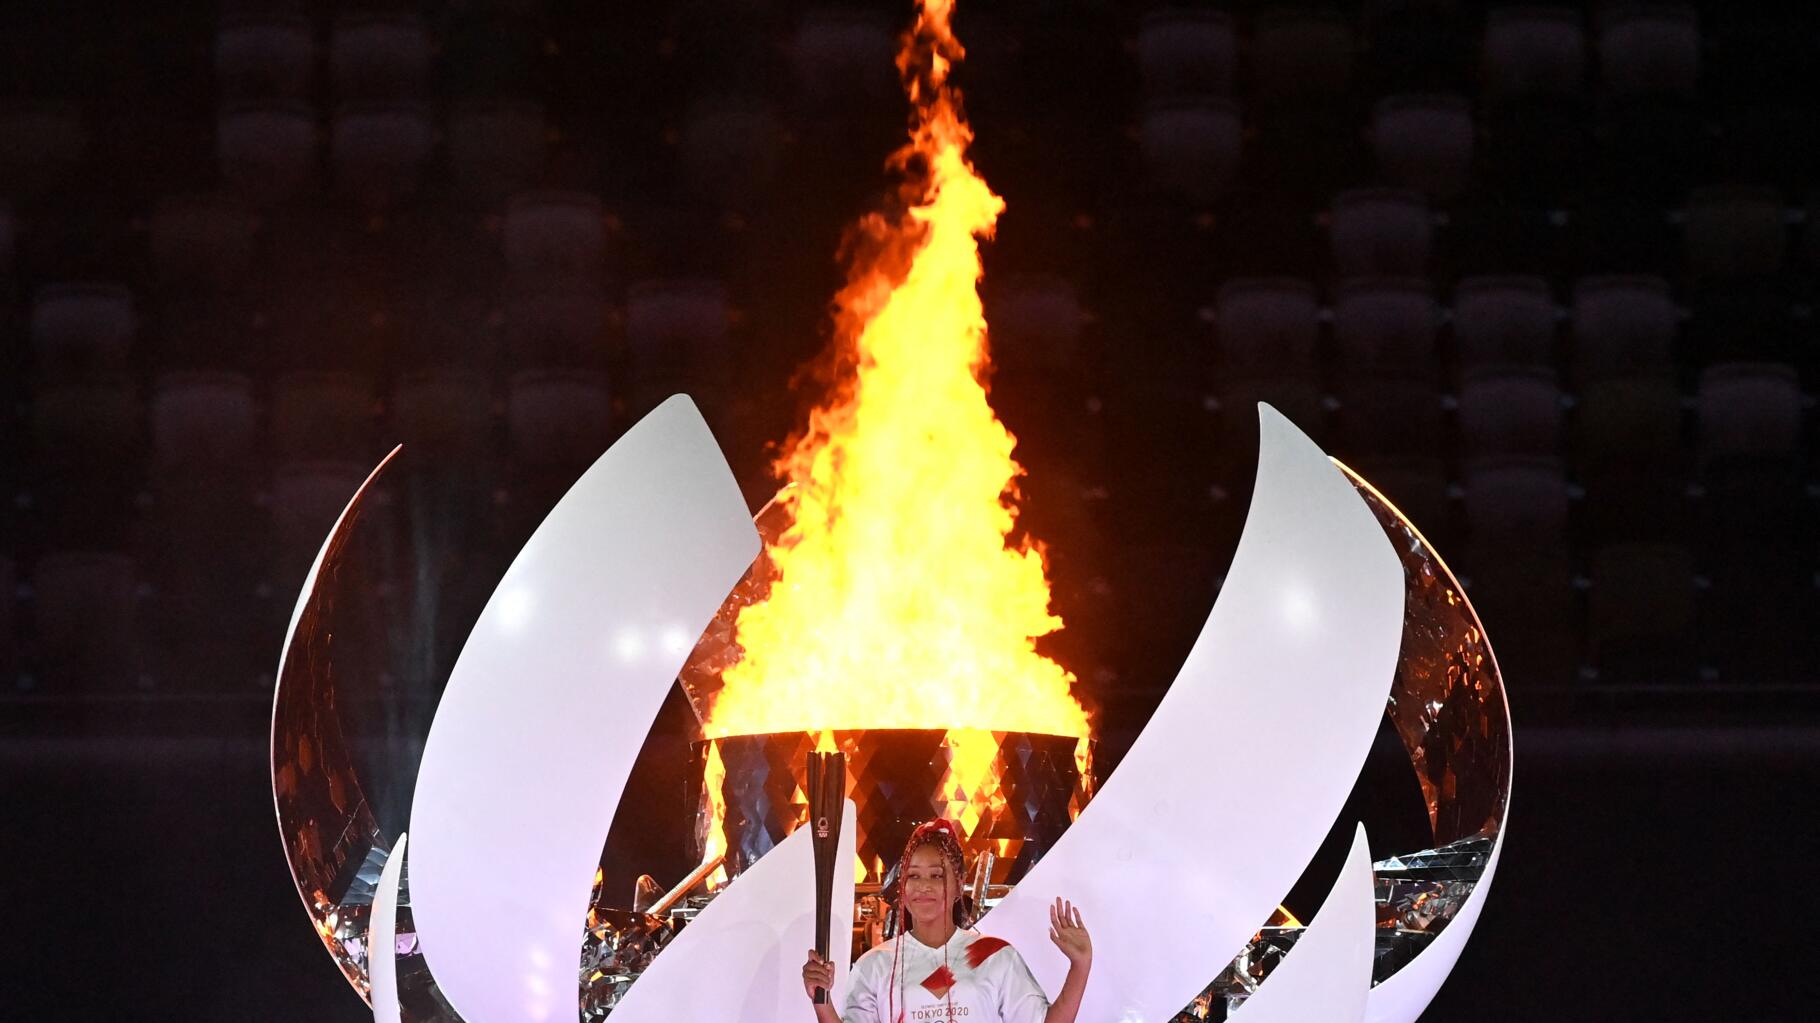 A Tokyo, la flamme olympique n'apportera pas la lumière - Francs Jeux